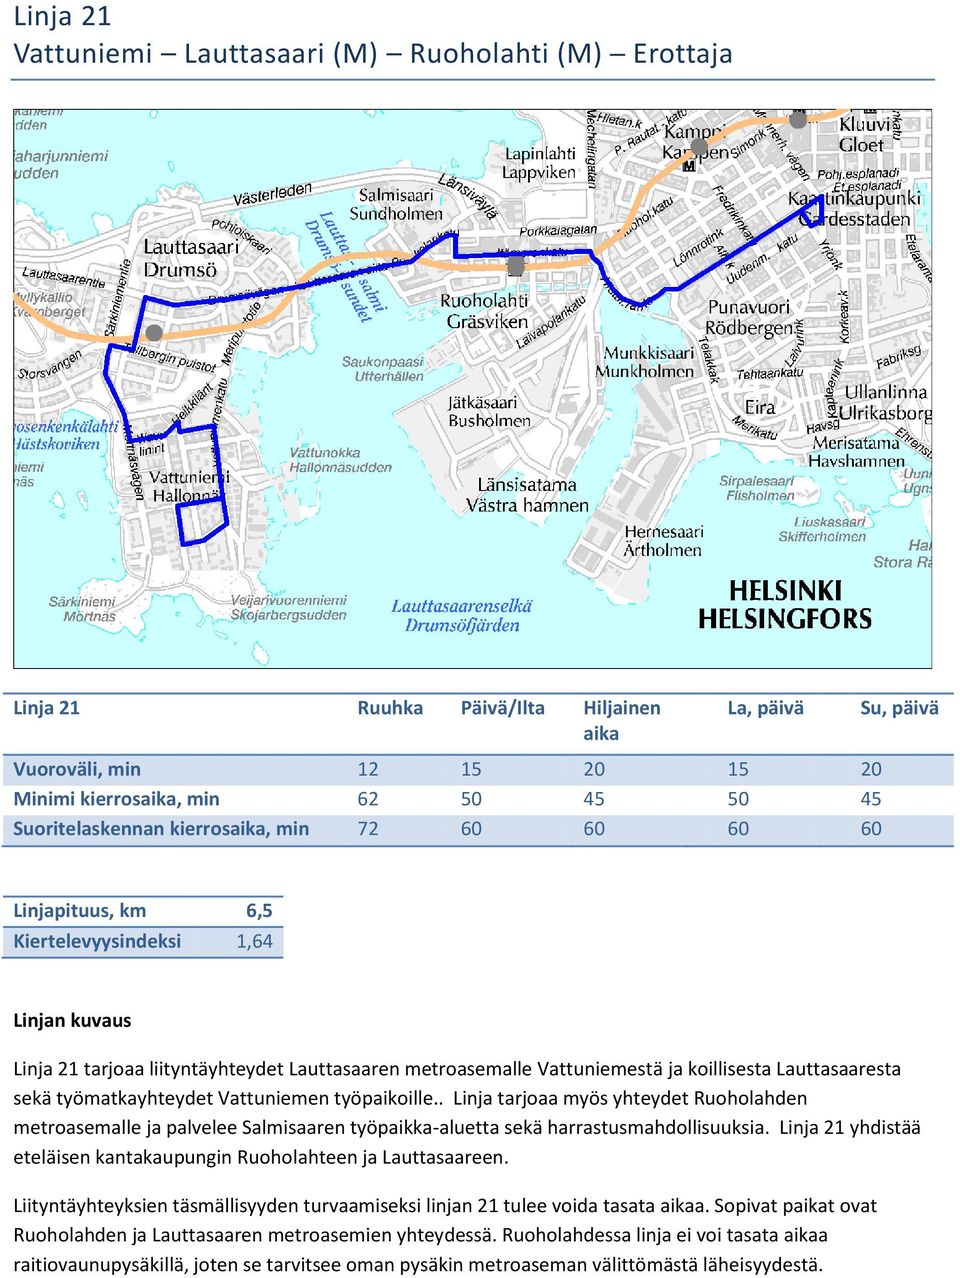 Vattuniemen työpaikoille.. Linja tarjoaa myös yhteydet Ruoholahden metroasemalle ja palvelee Salmisaaren työpaikka-aluetta sekä harrastusmahdollisuuksia.